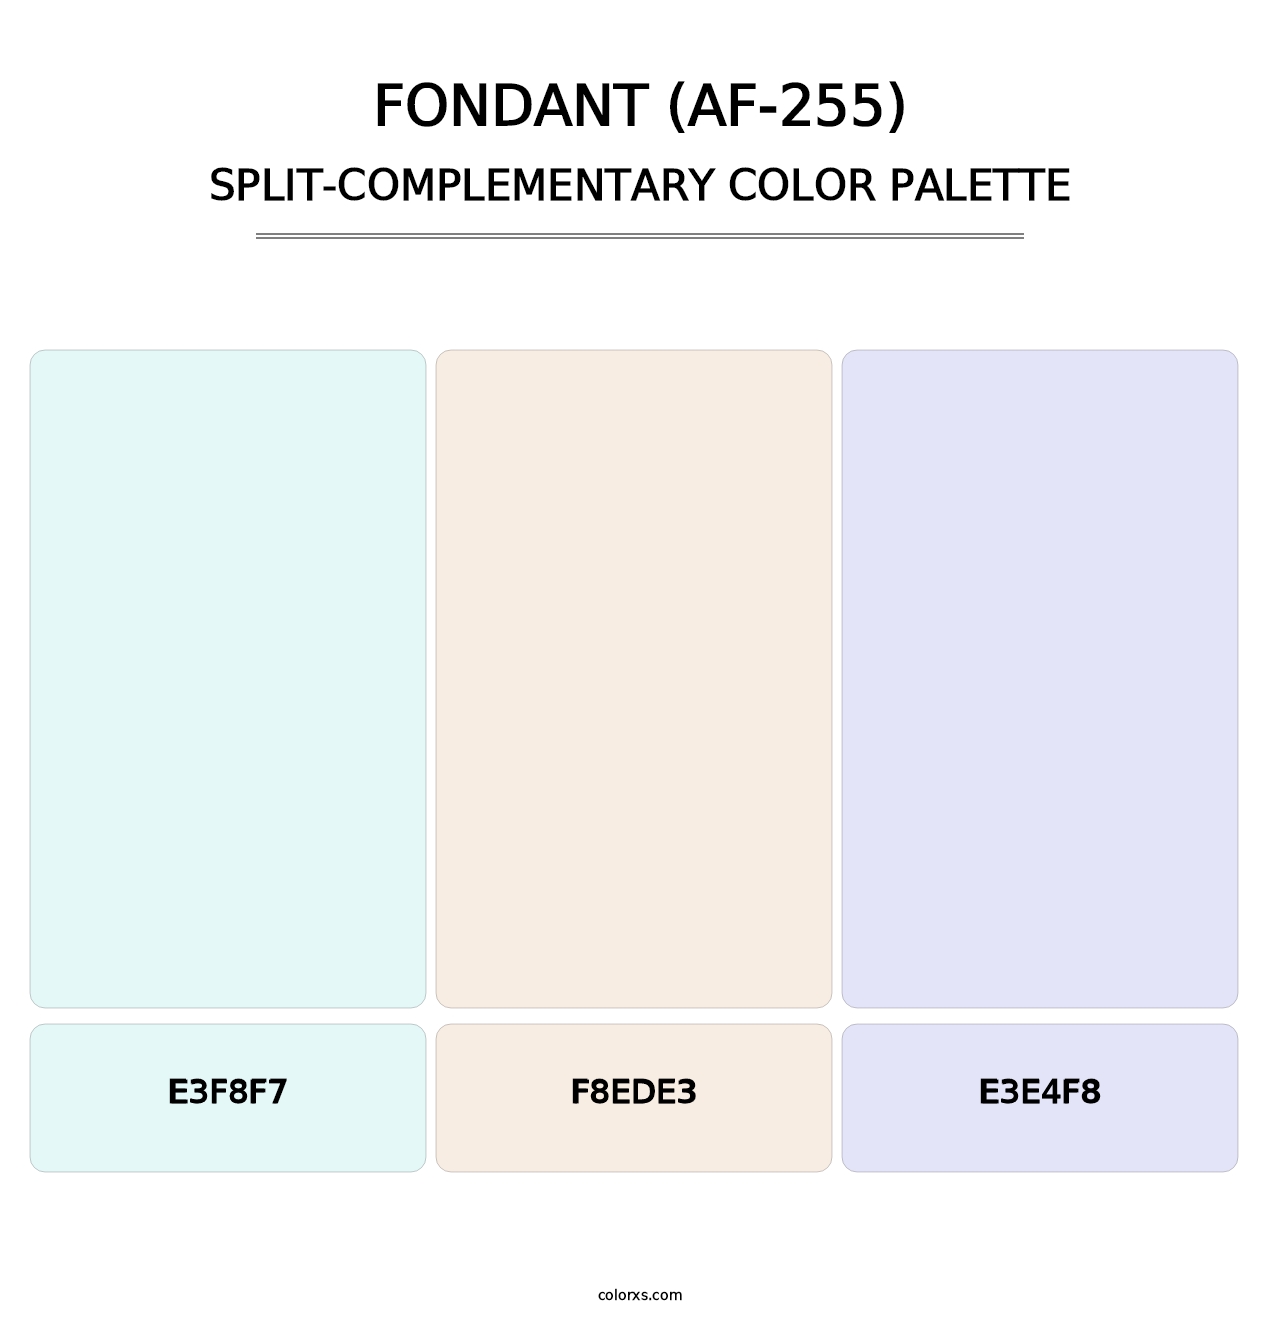 Fondant (AF-255) - Split-Complementary Color Palette